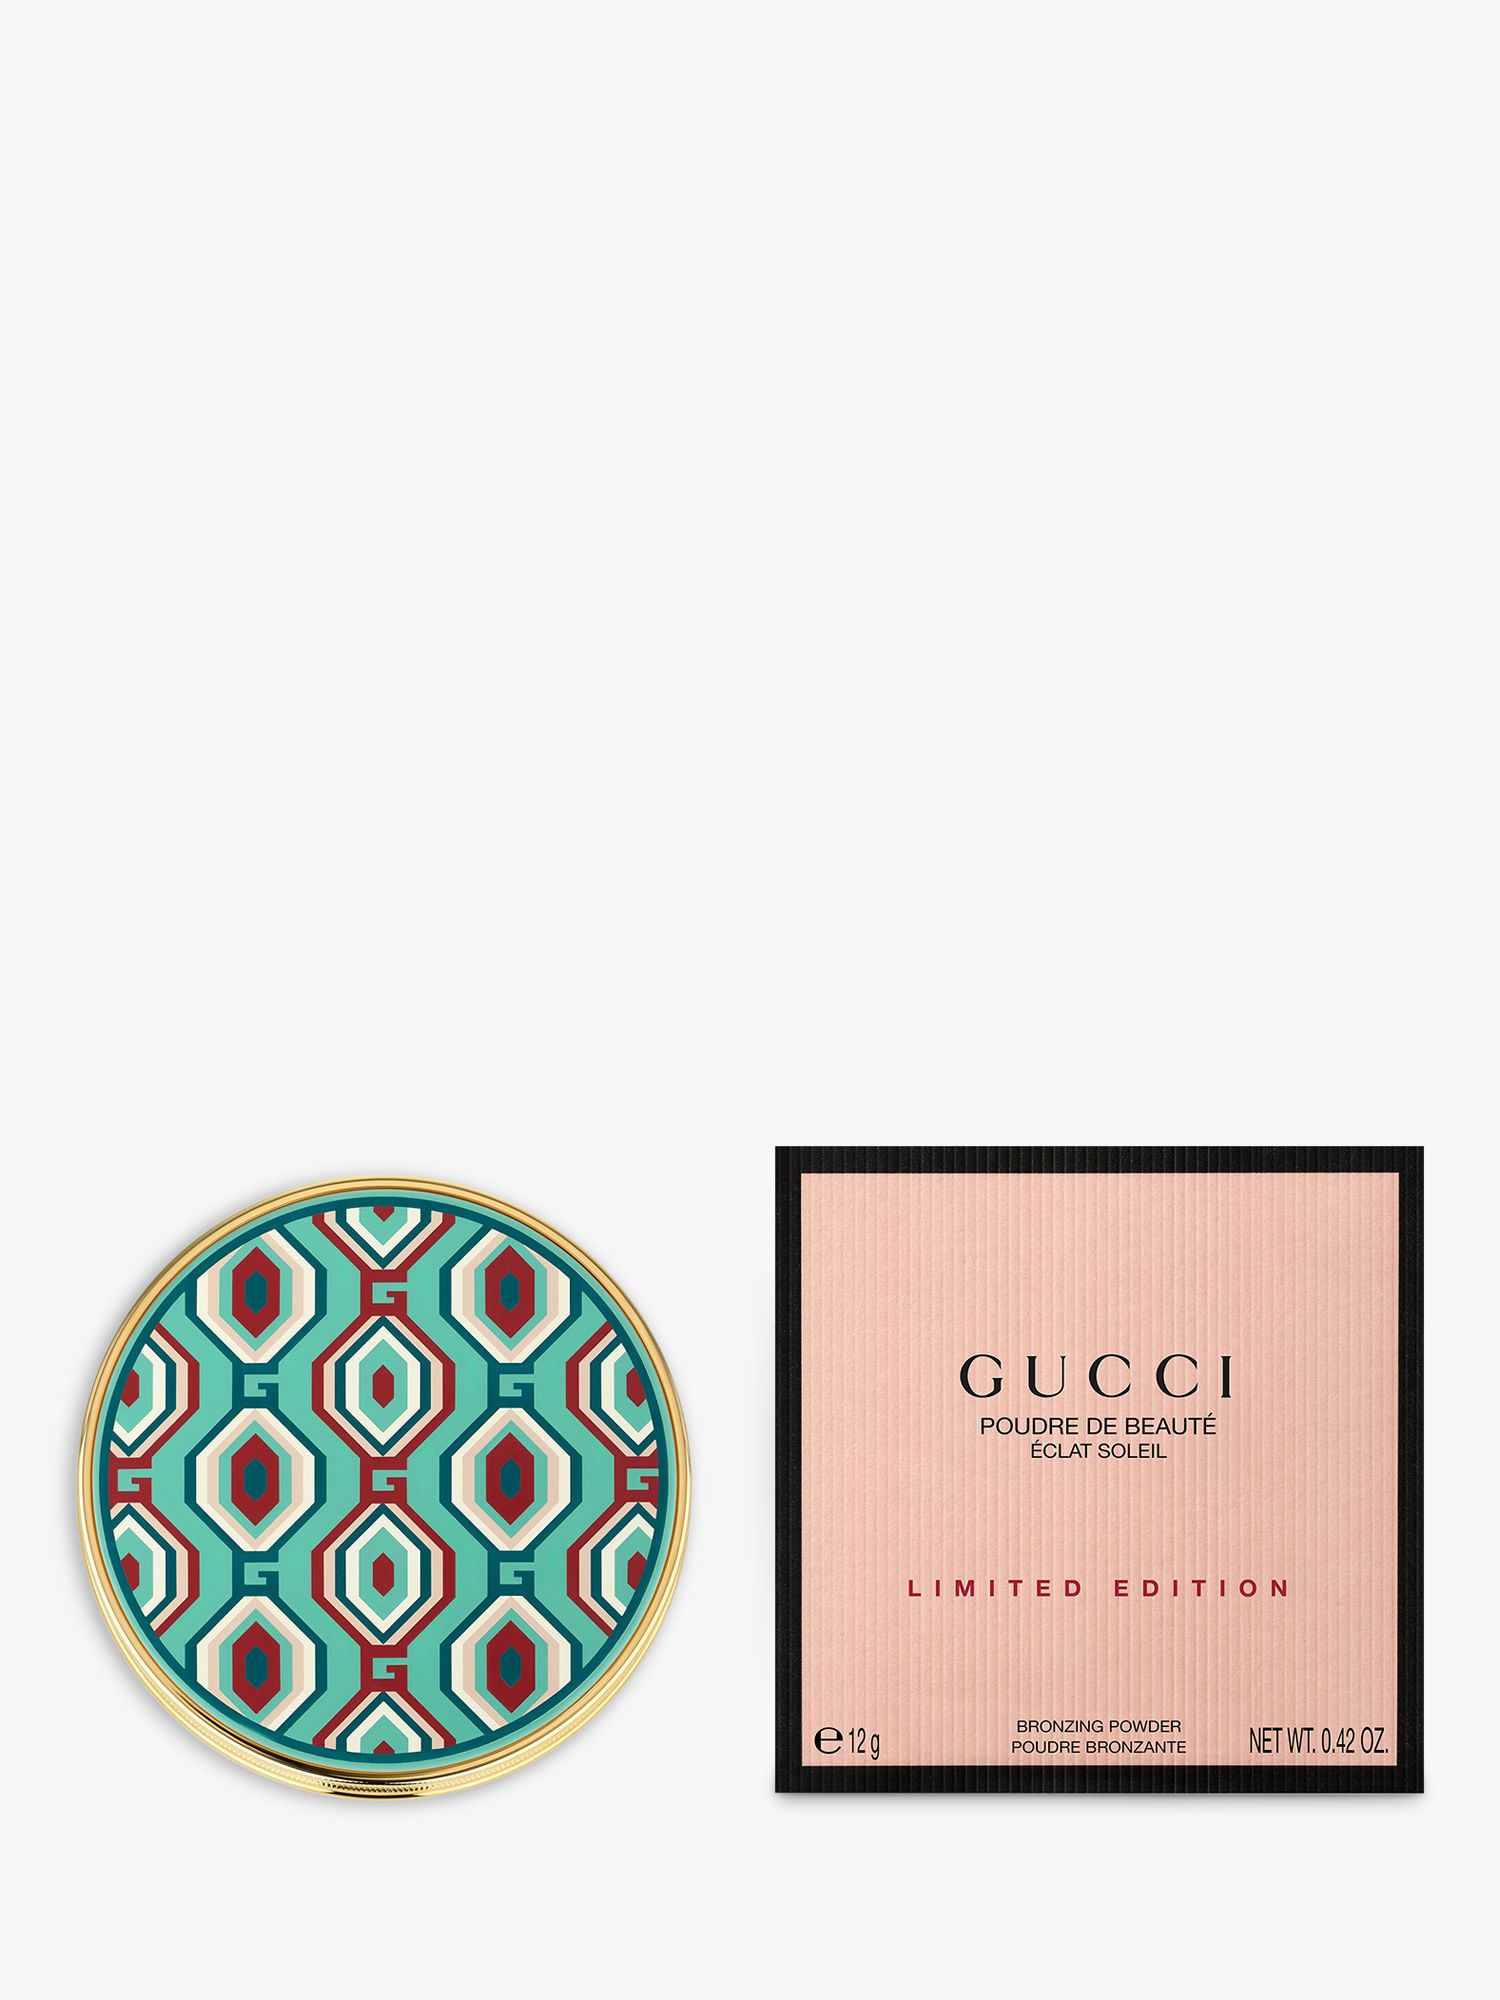 Gucci Poudre de Beauté Eclat Soleil Bronzing Powder Limited Edition, 03 2